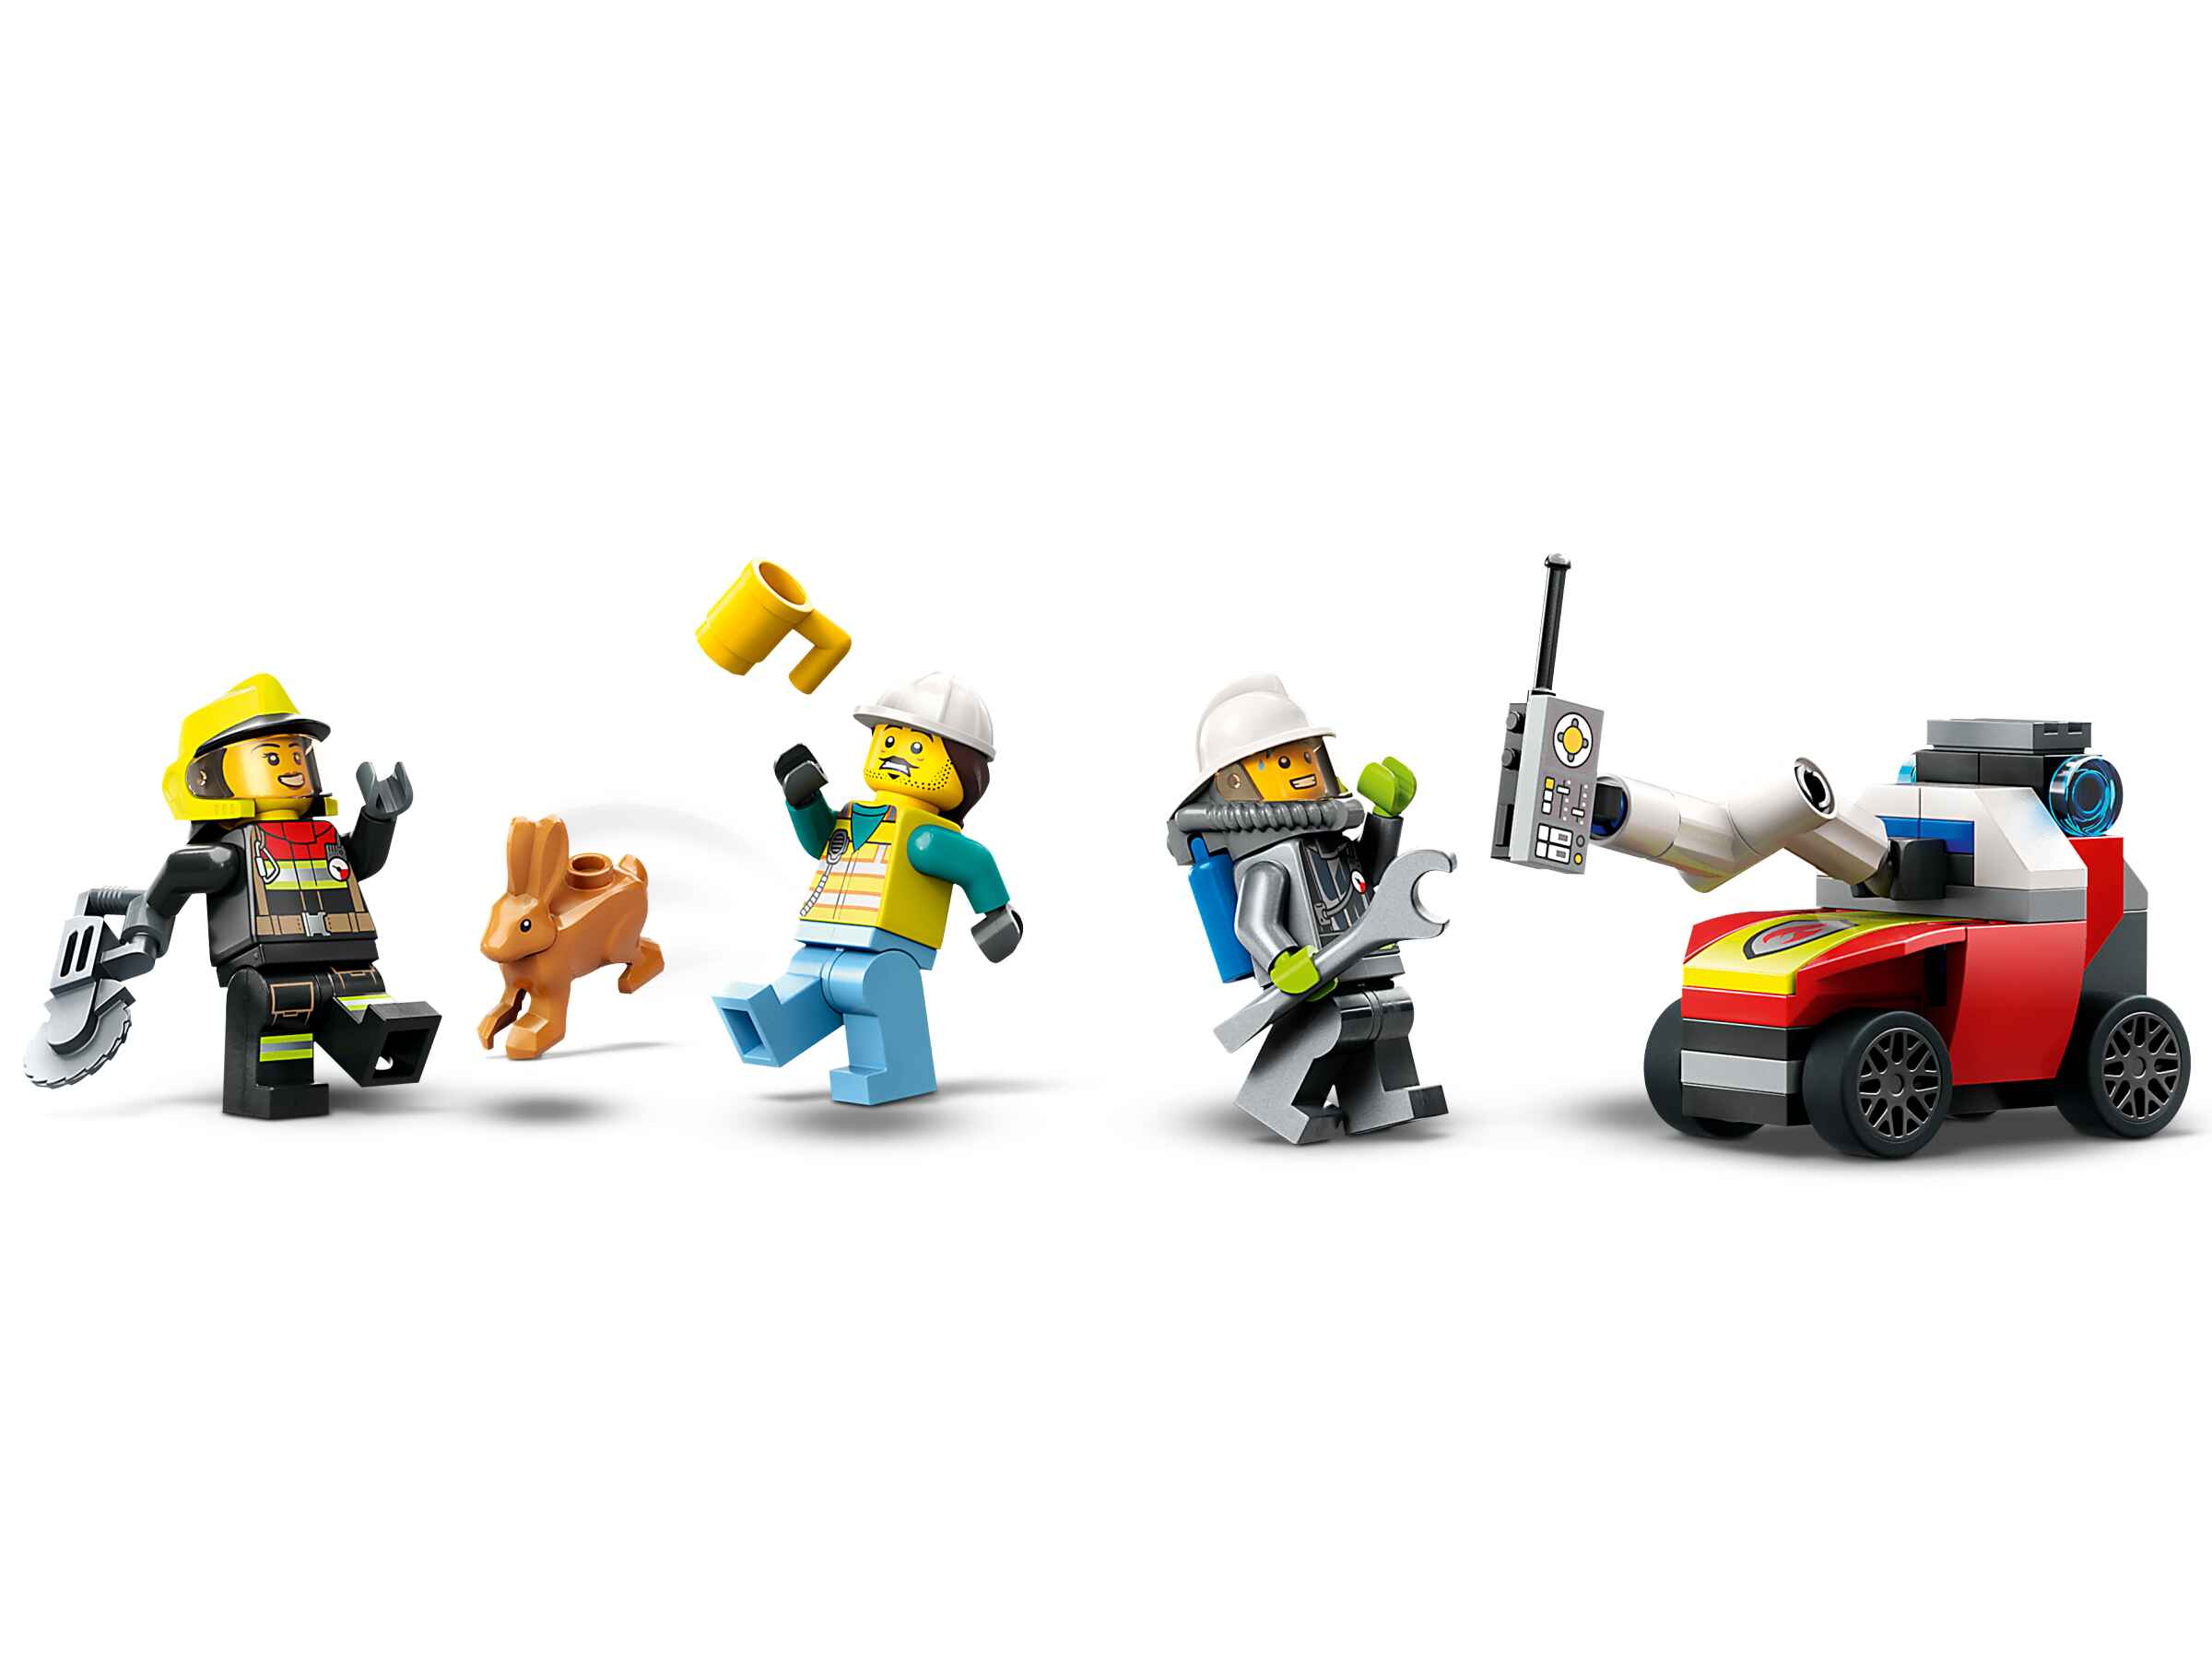 LEGO 60374 City Einsatzleitwagen der Feuerwehr, Löschdrohne, 3 Minifiguren